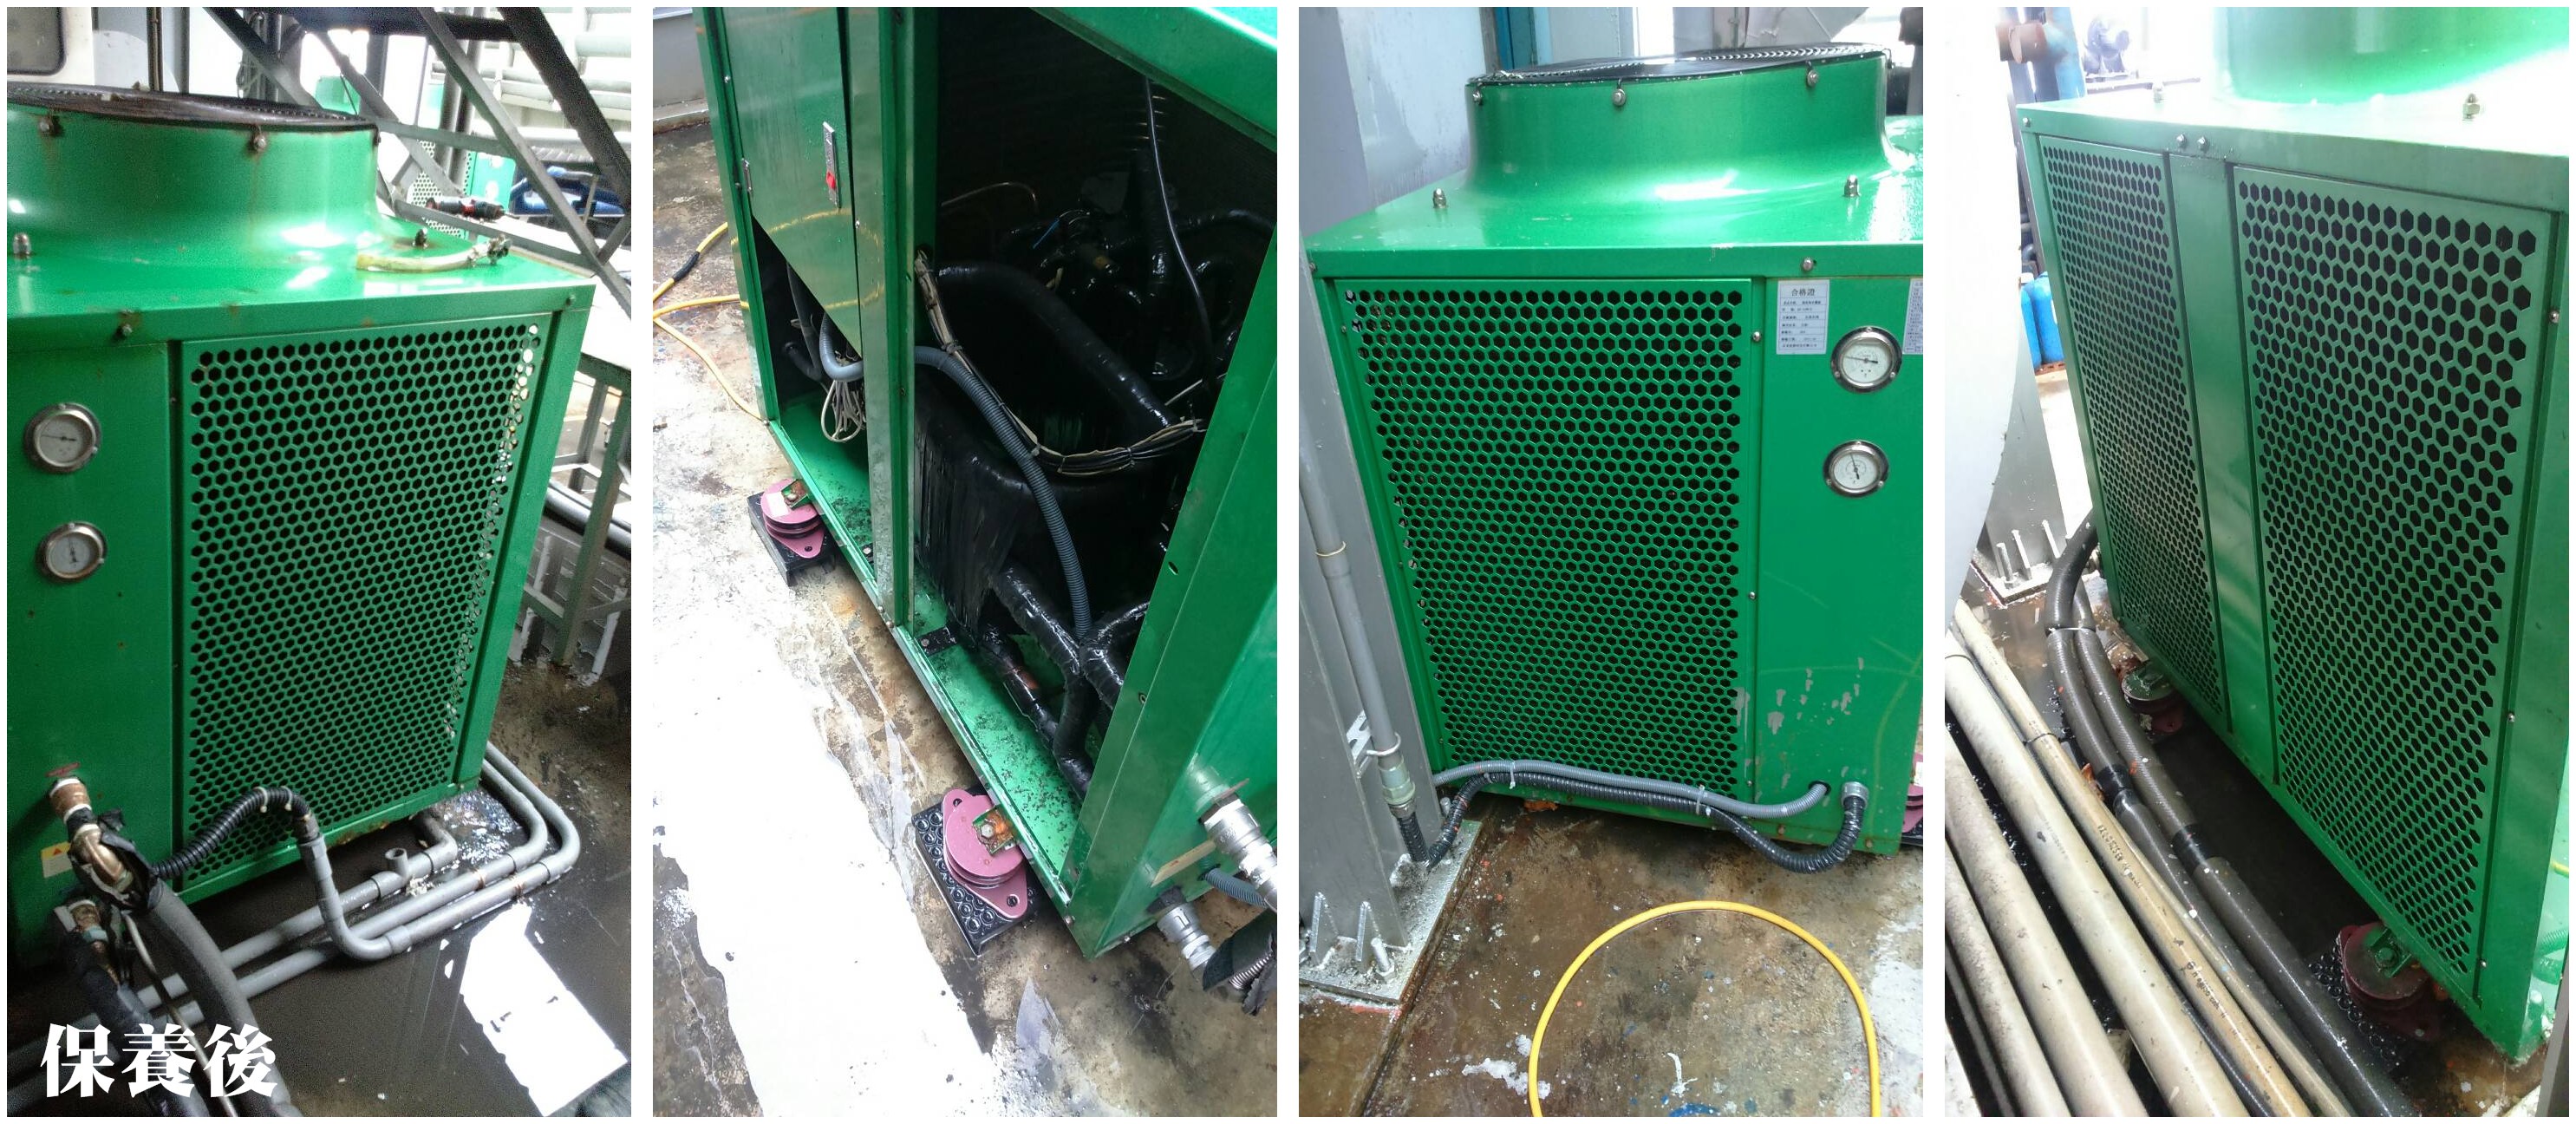 熱泵主機 保養後熱水器安裝實績